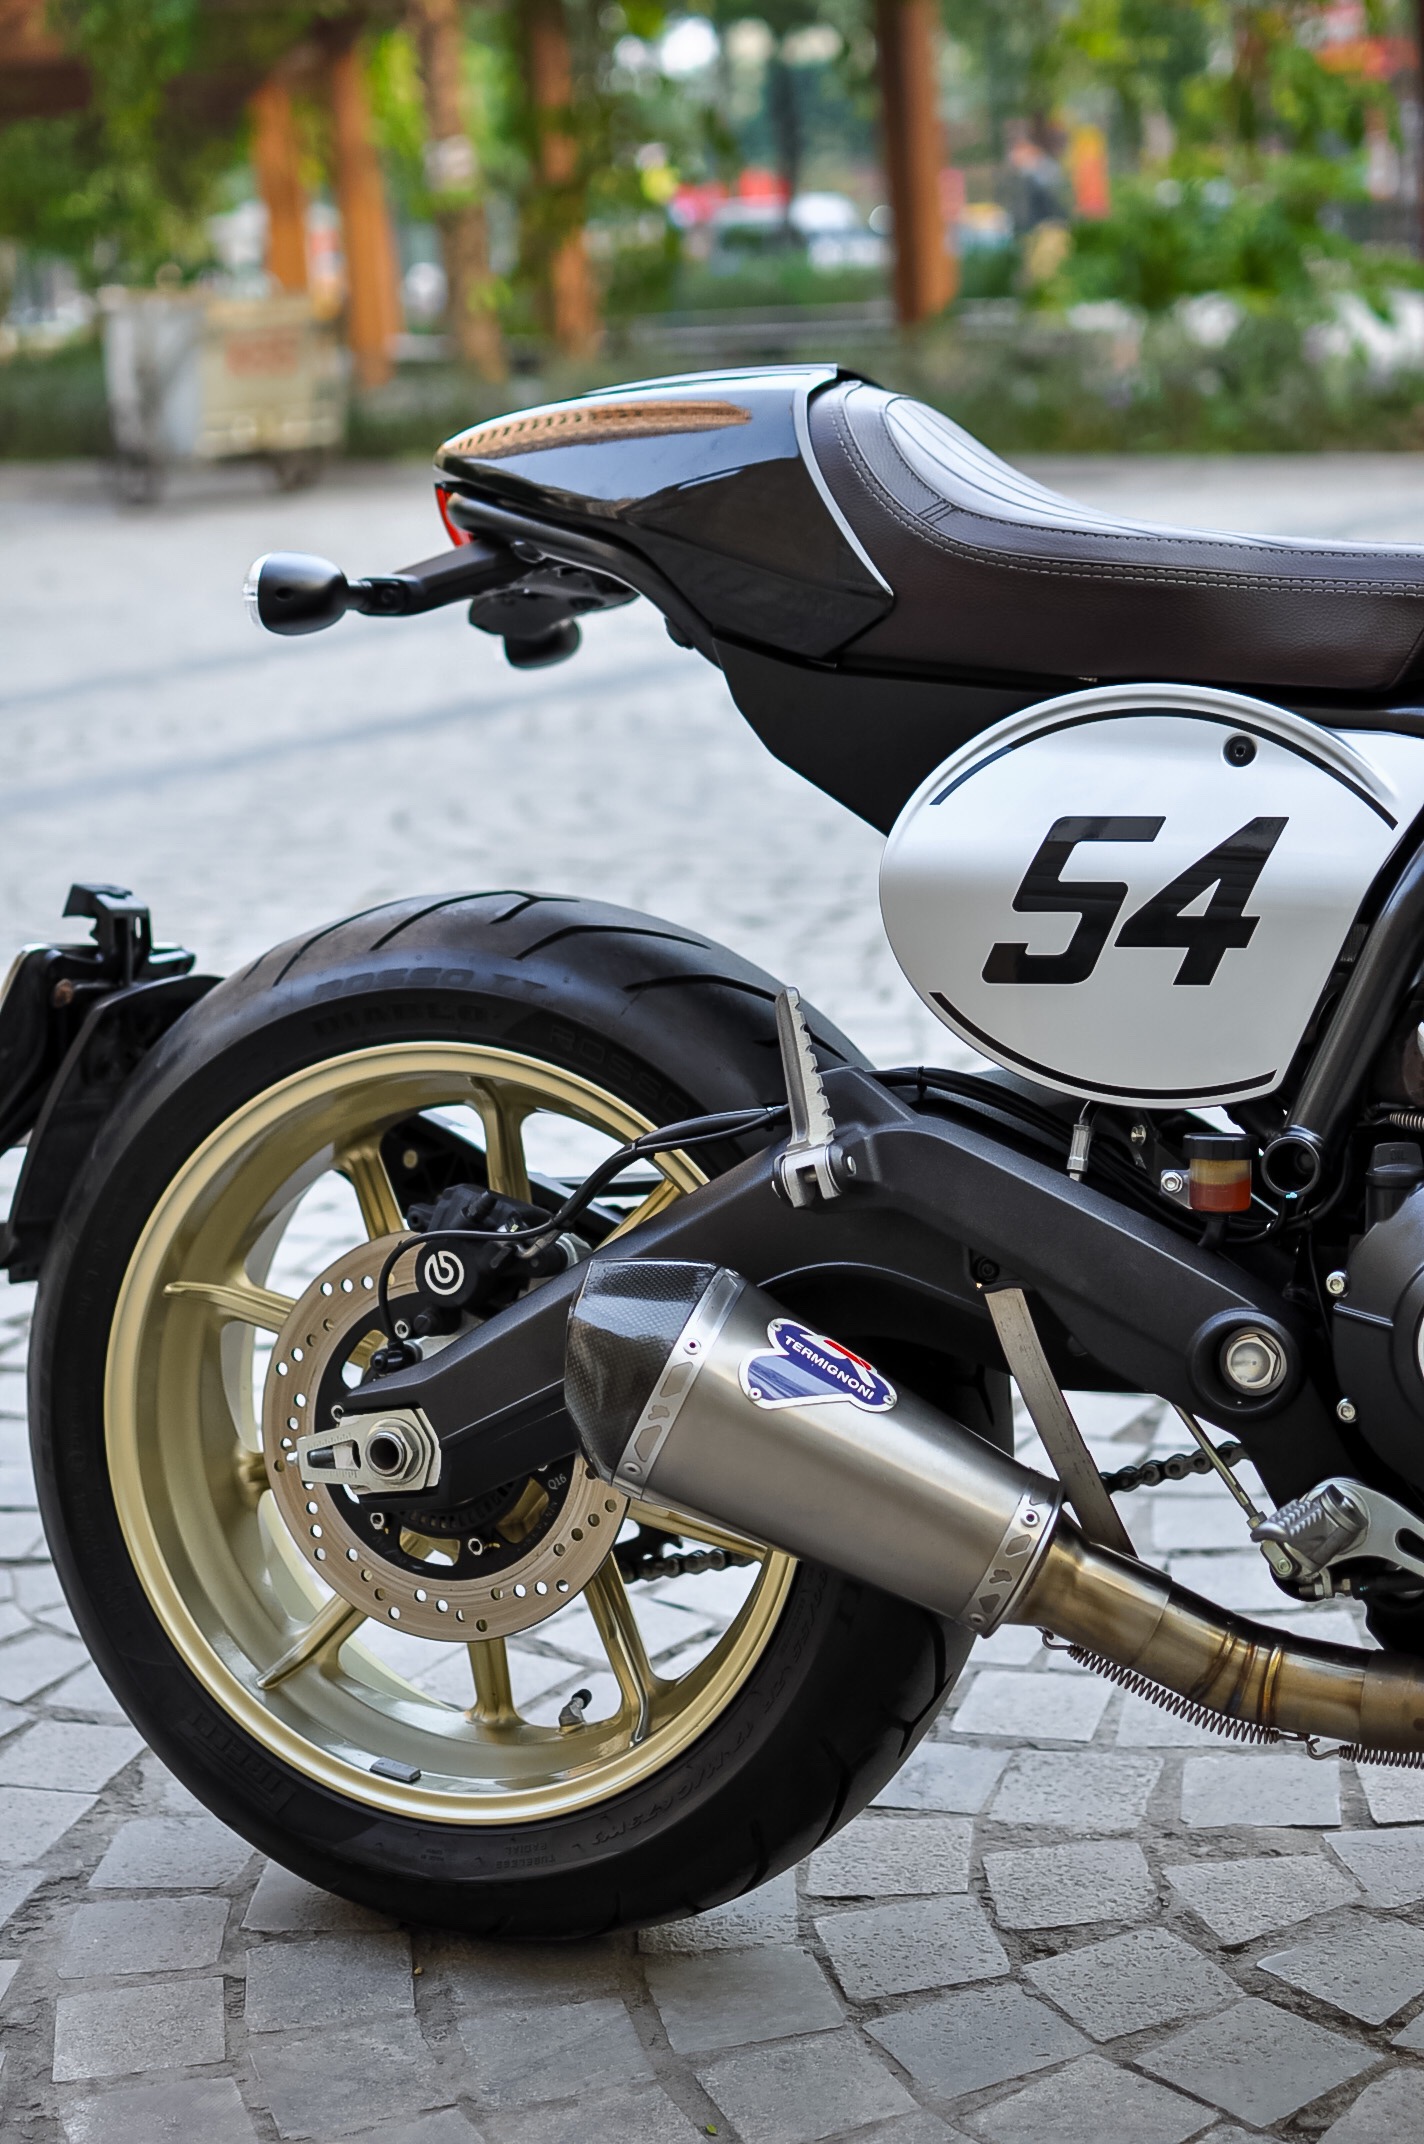 Ducati Scrambler Cafe Racer 2019 có mặt tại Việt Nam giá 400 triệu đồng